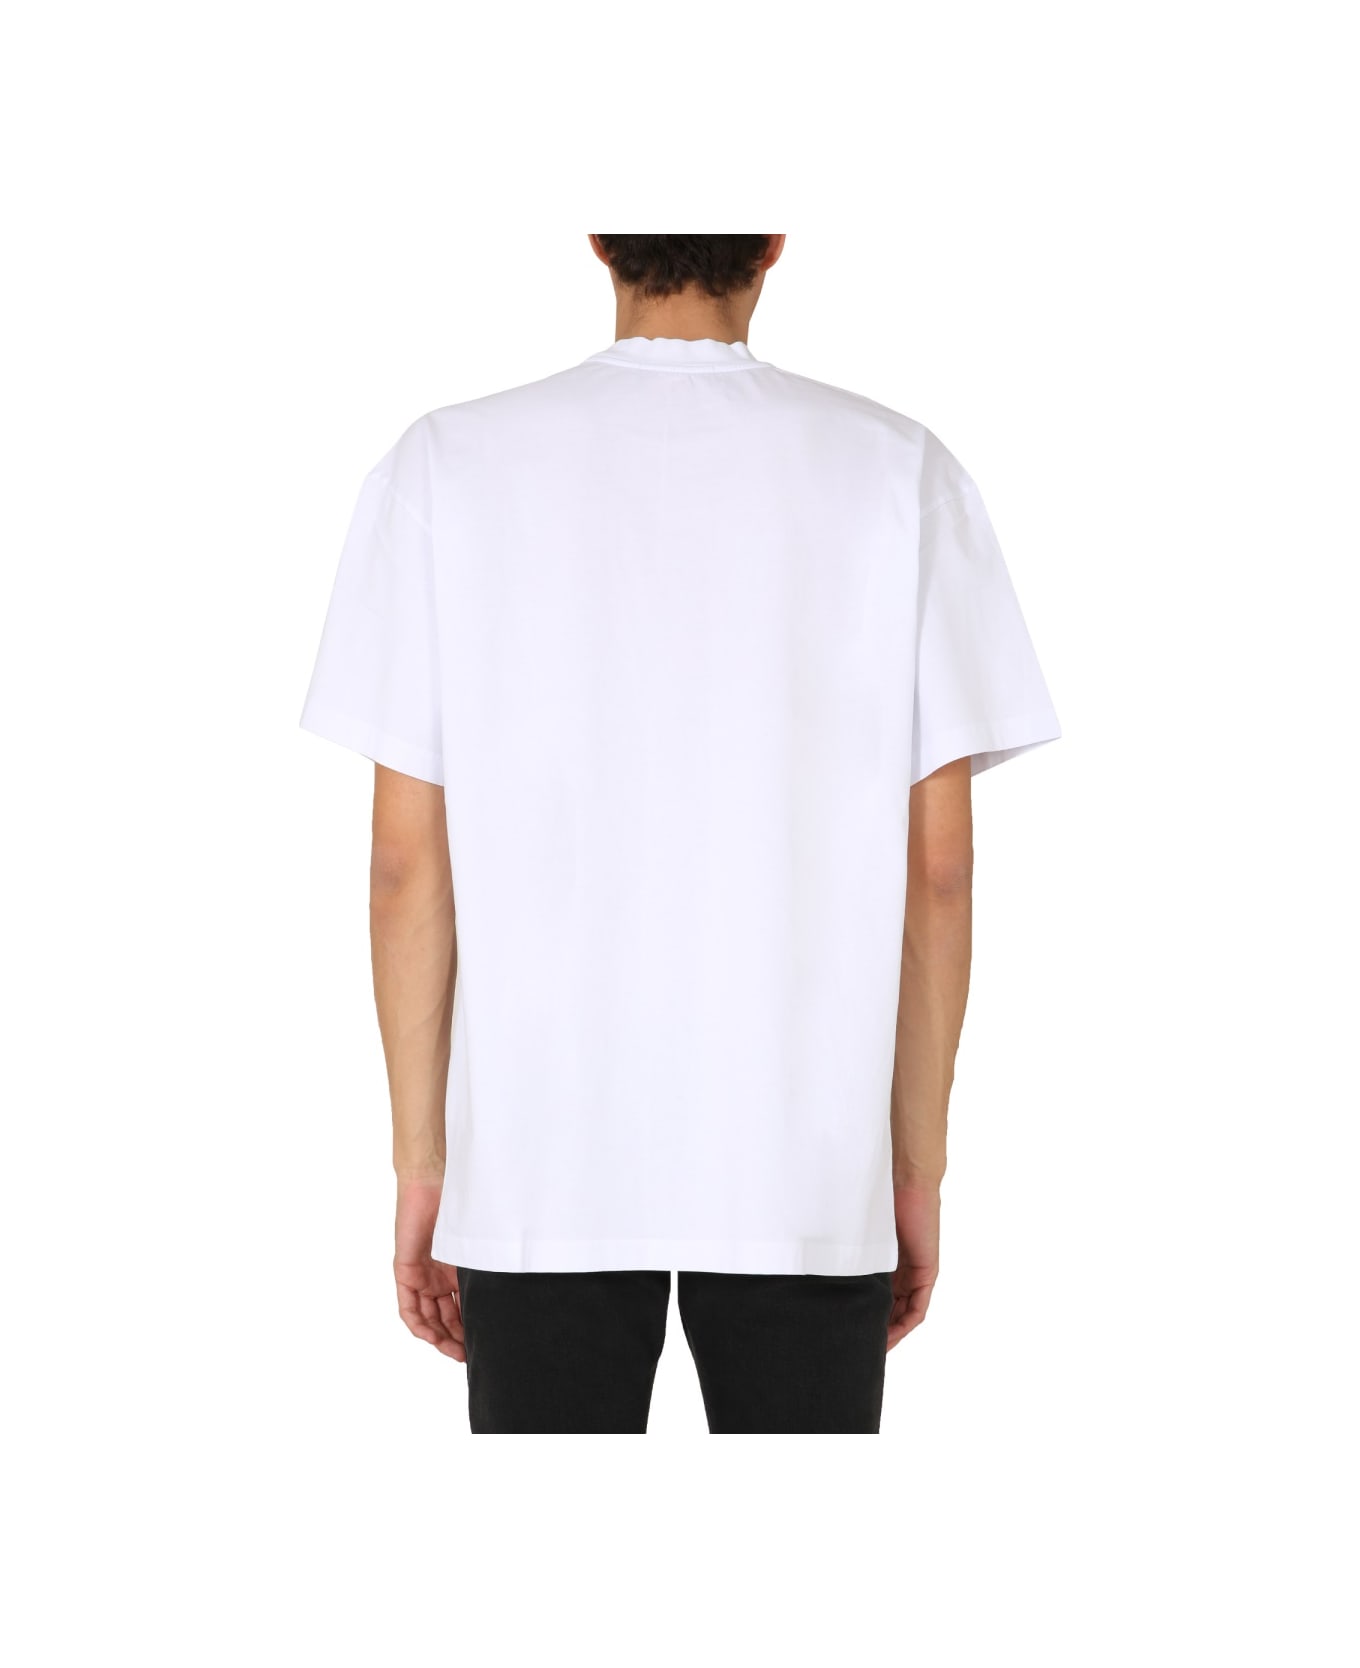 MSGM Crew Neck T-shirt - WHITE